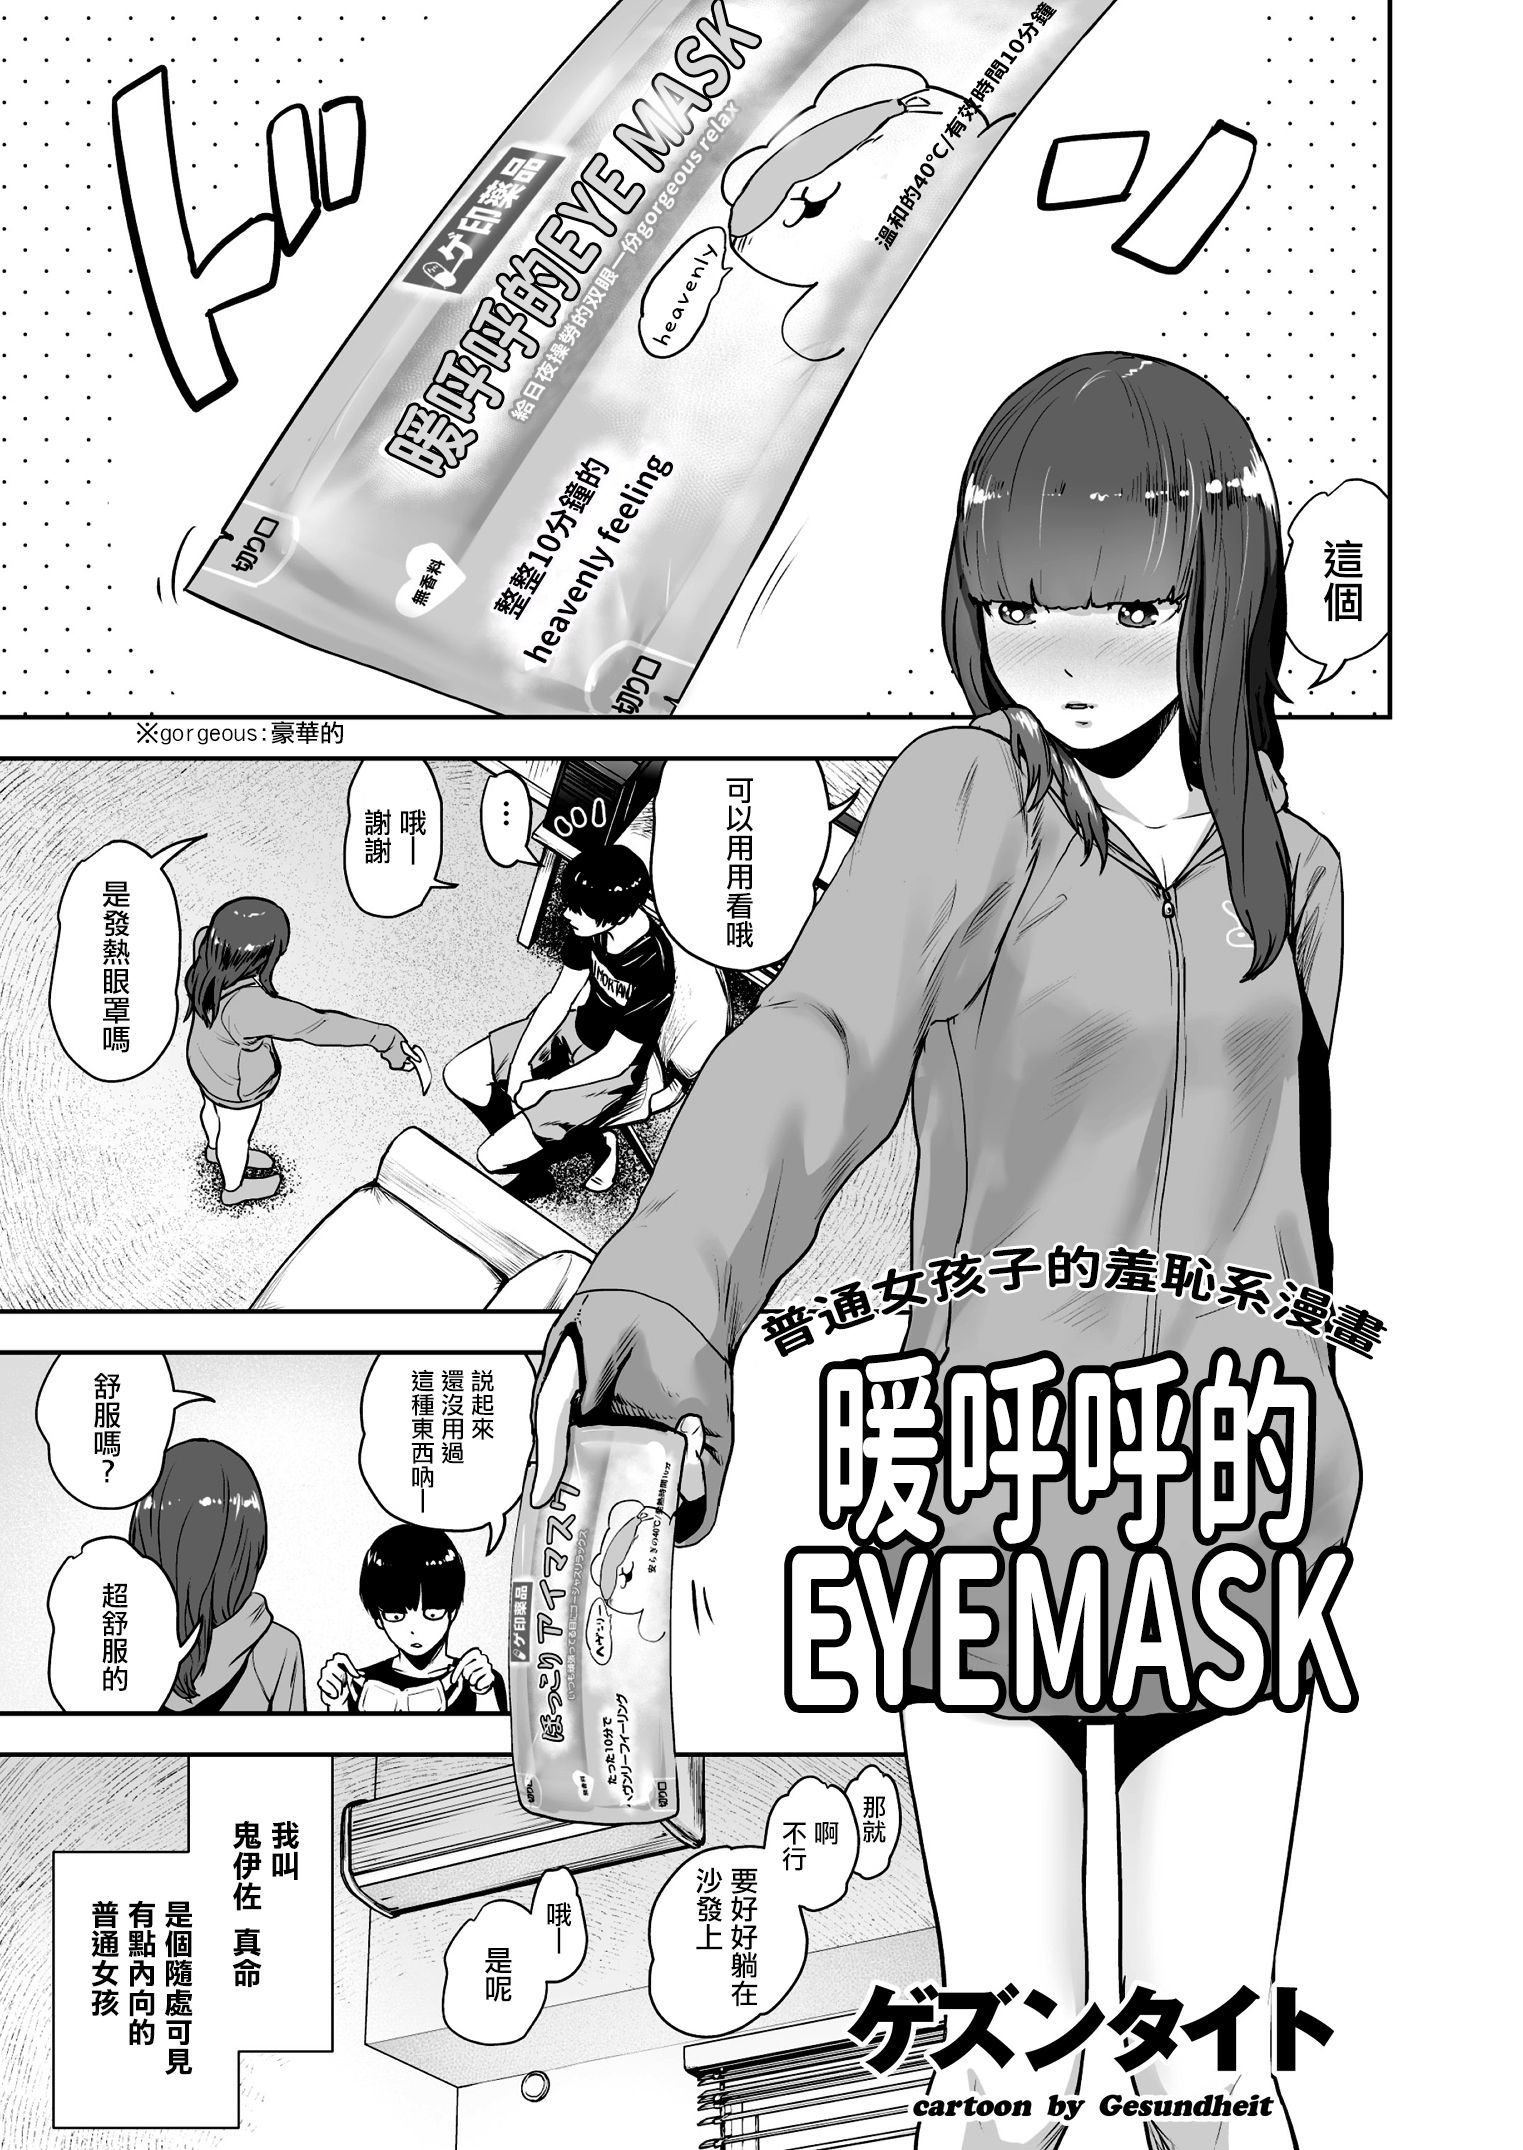 ほっこりアイマスク|暖呼呼的EYEMASK